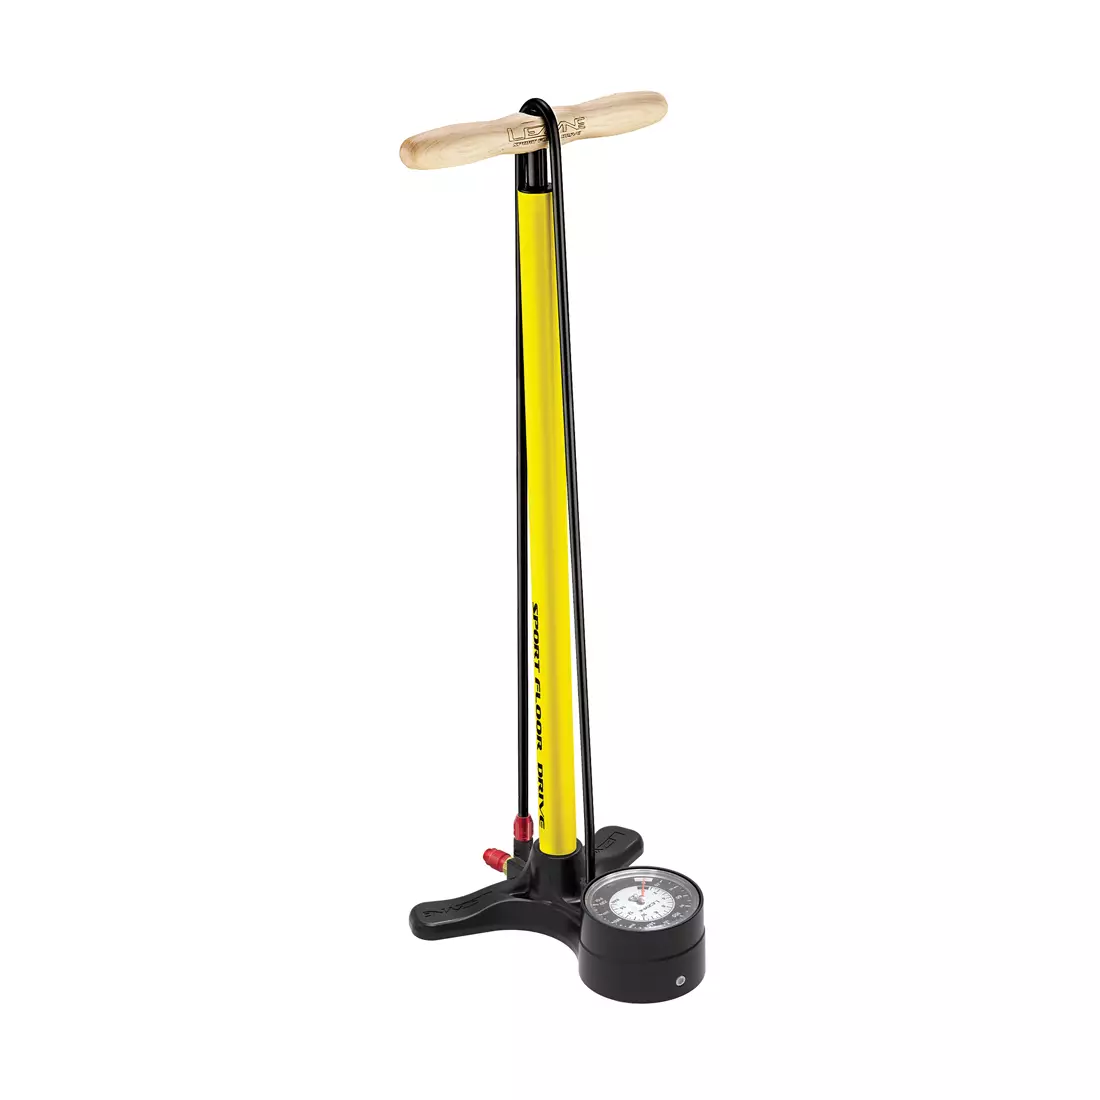 Floor pump LEZYNE SPORT FLOOR DRIVE 3.5 ABS-1 PRO CHUCK 220psi yellow 